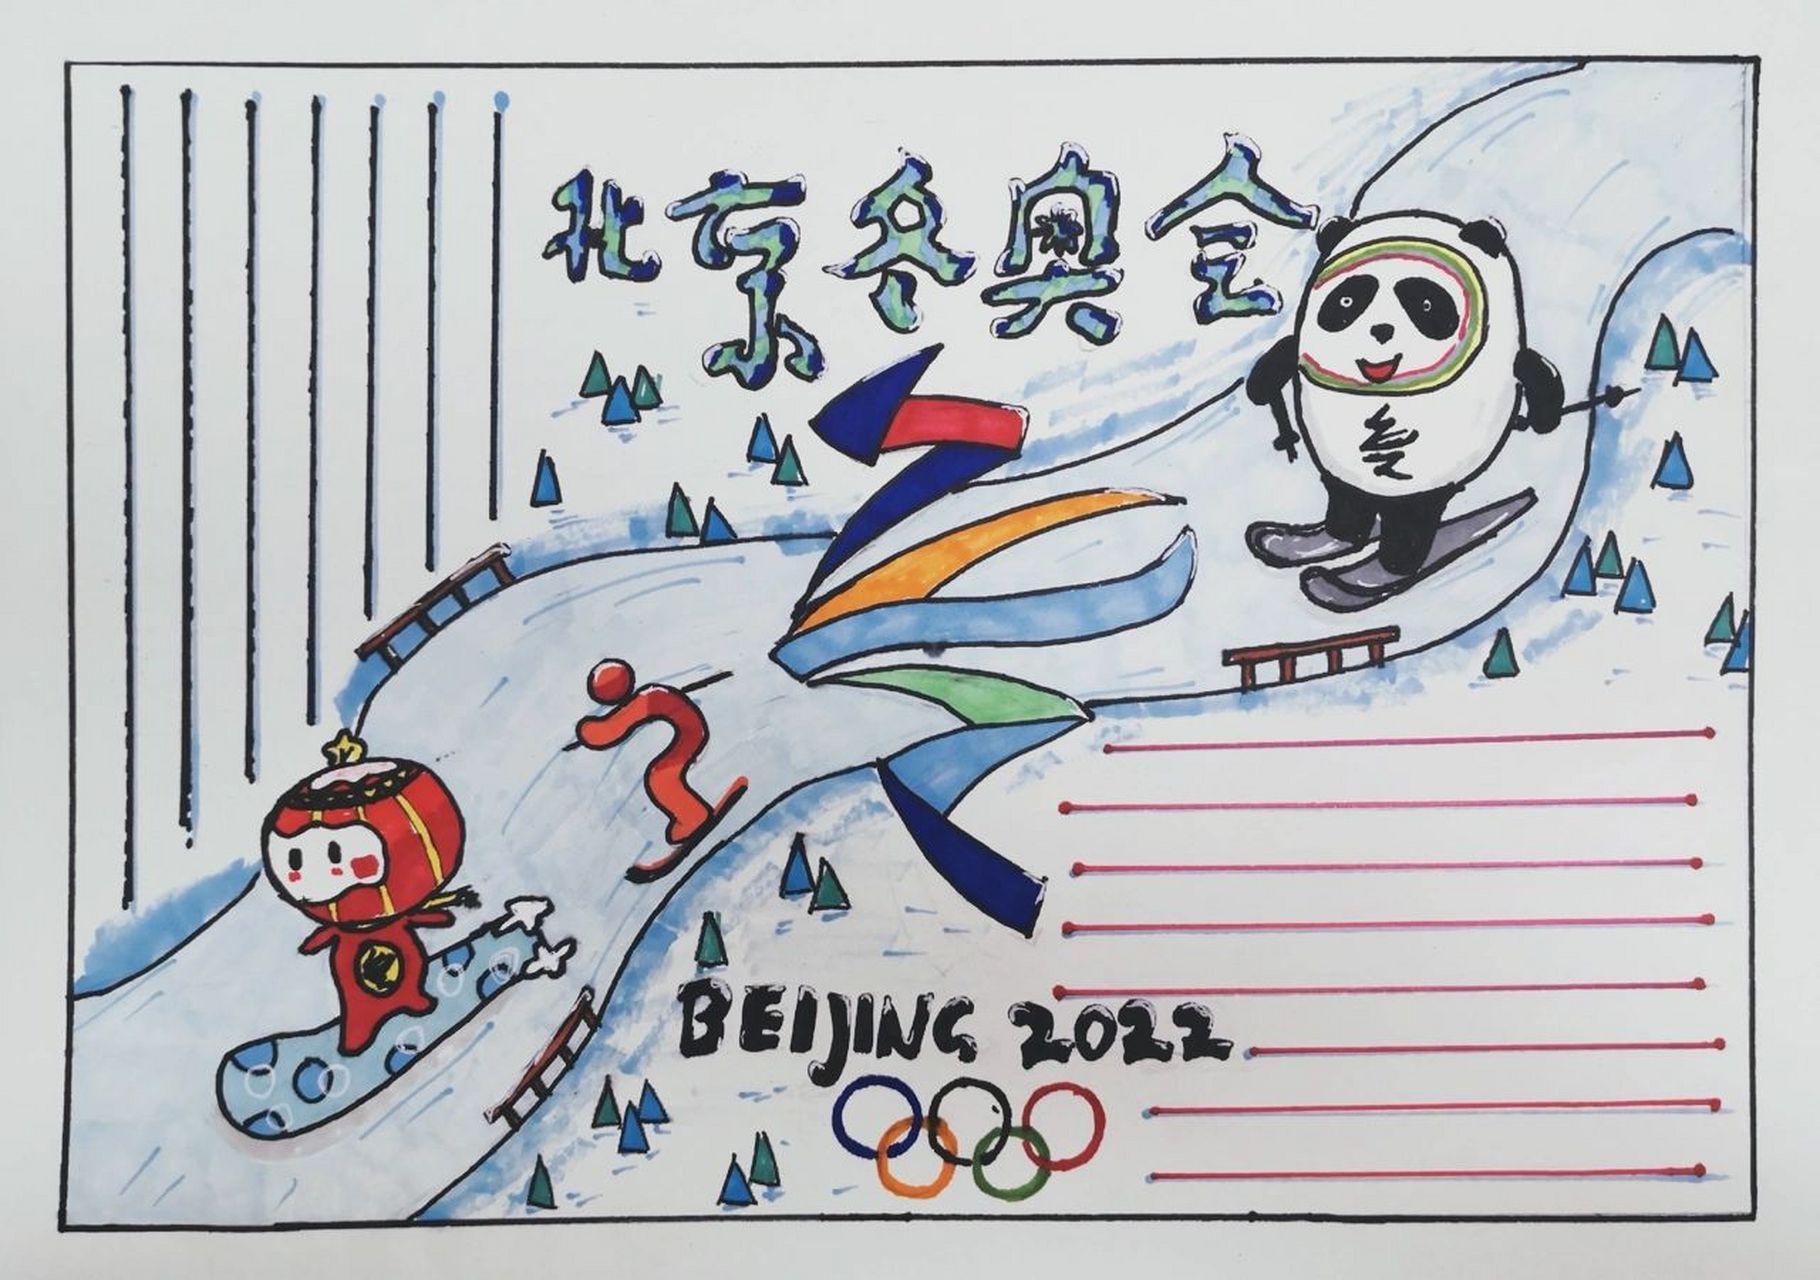 你们喜欢这样的手抄报吗 2022年的北京冬奥会终于快要开始了,我们早就